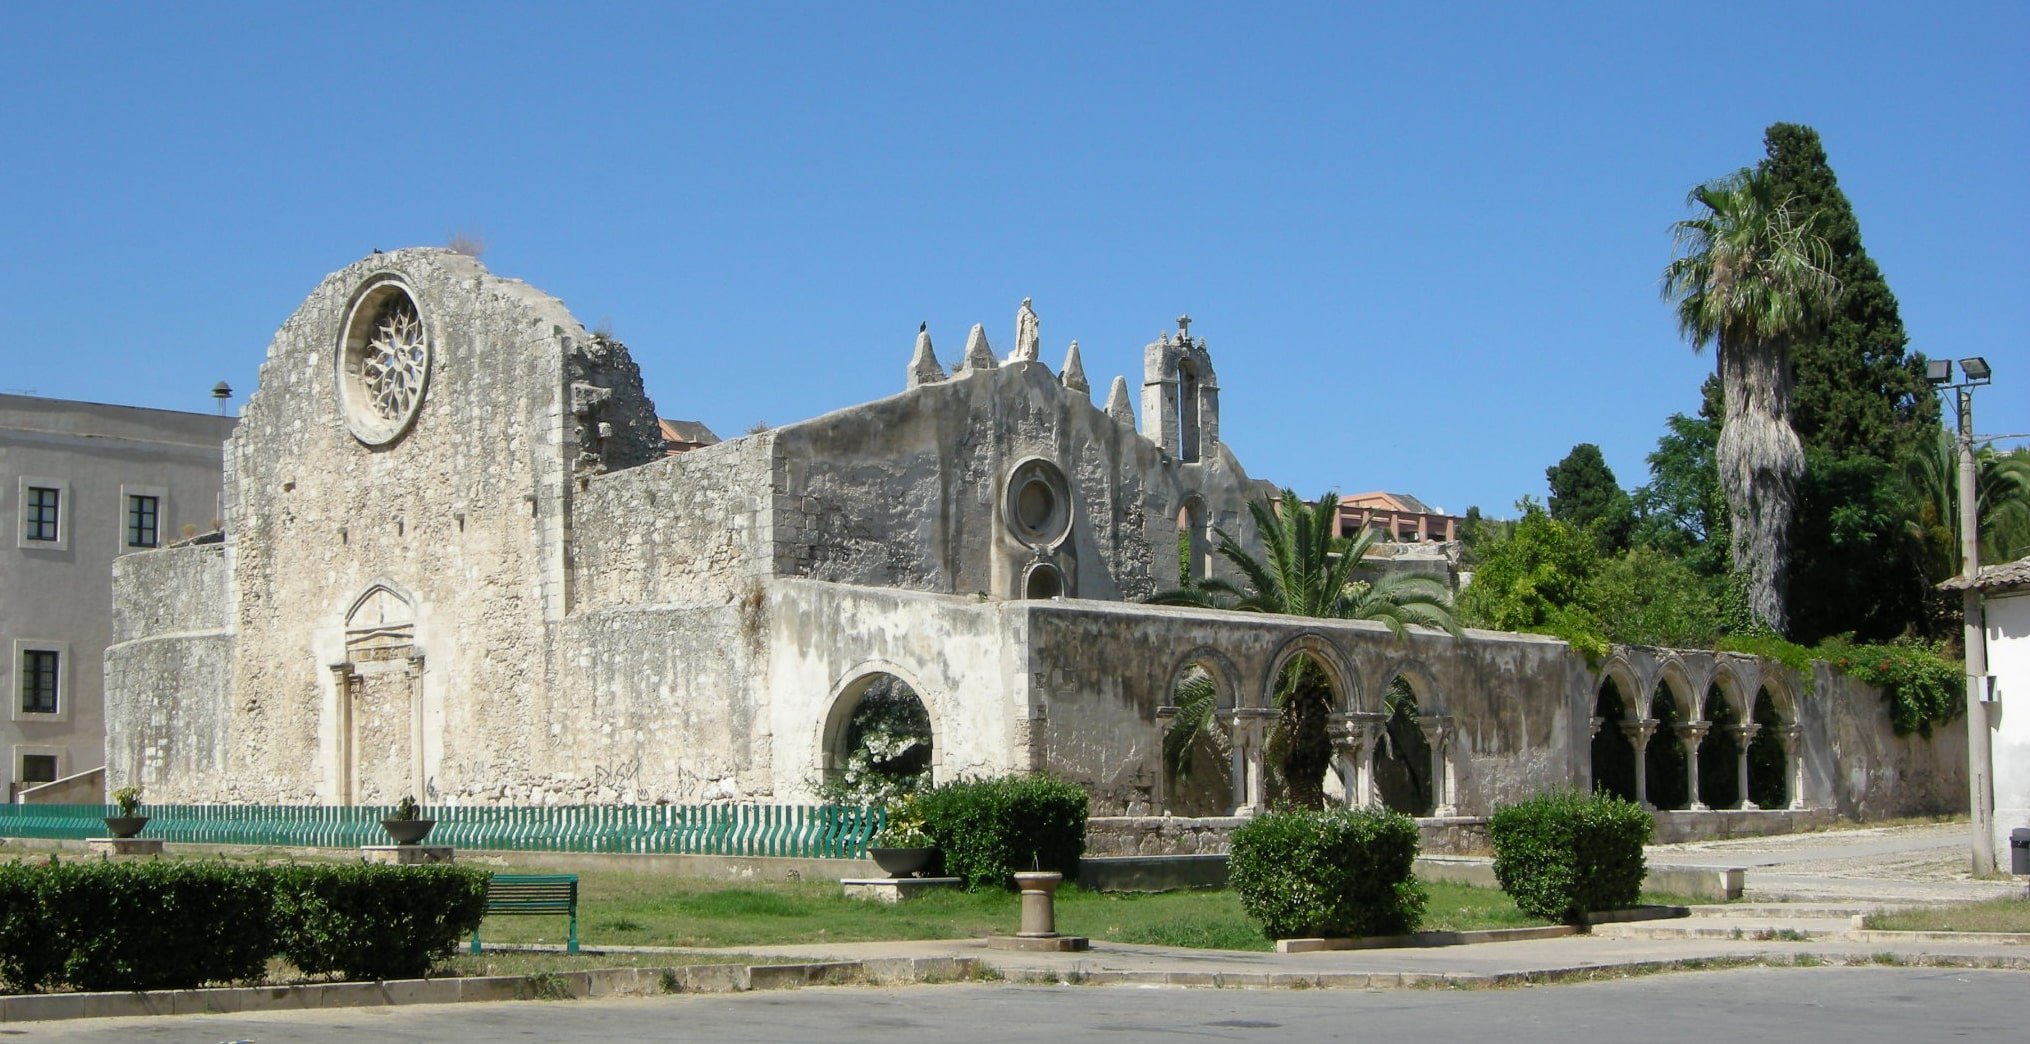 Chiesa di San Giovanni antica in pietra a Siracusa, Sicilia